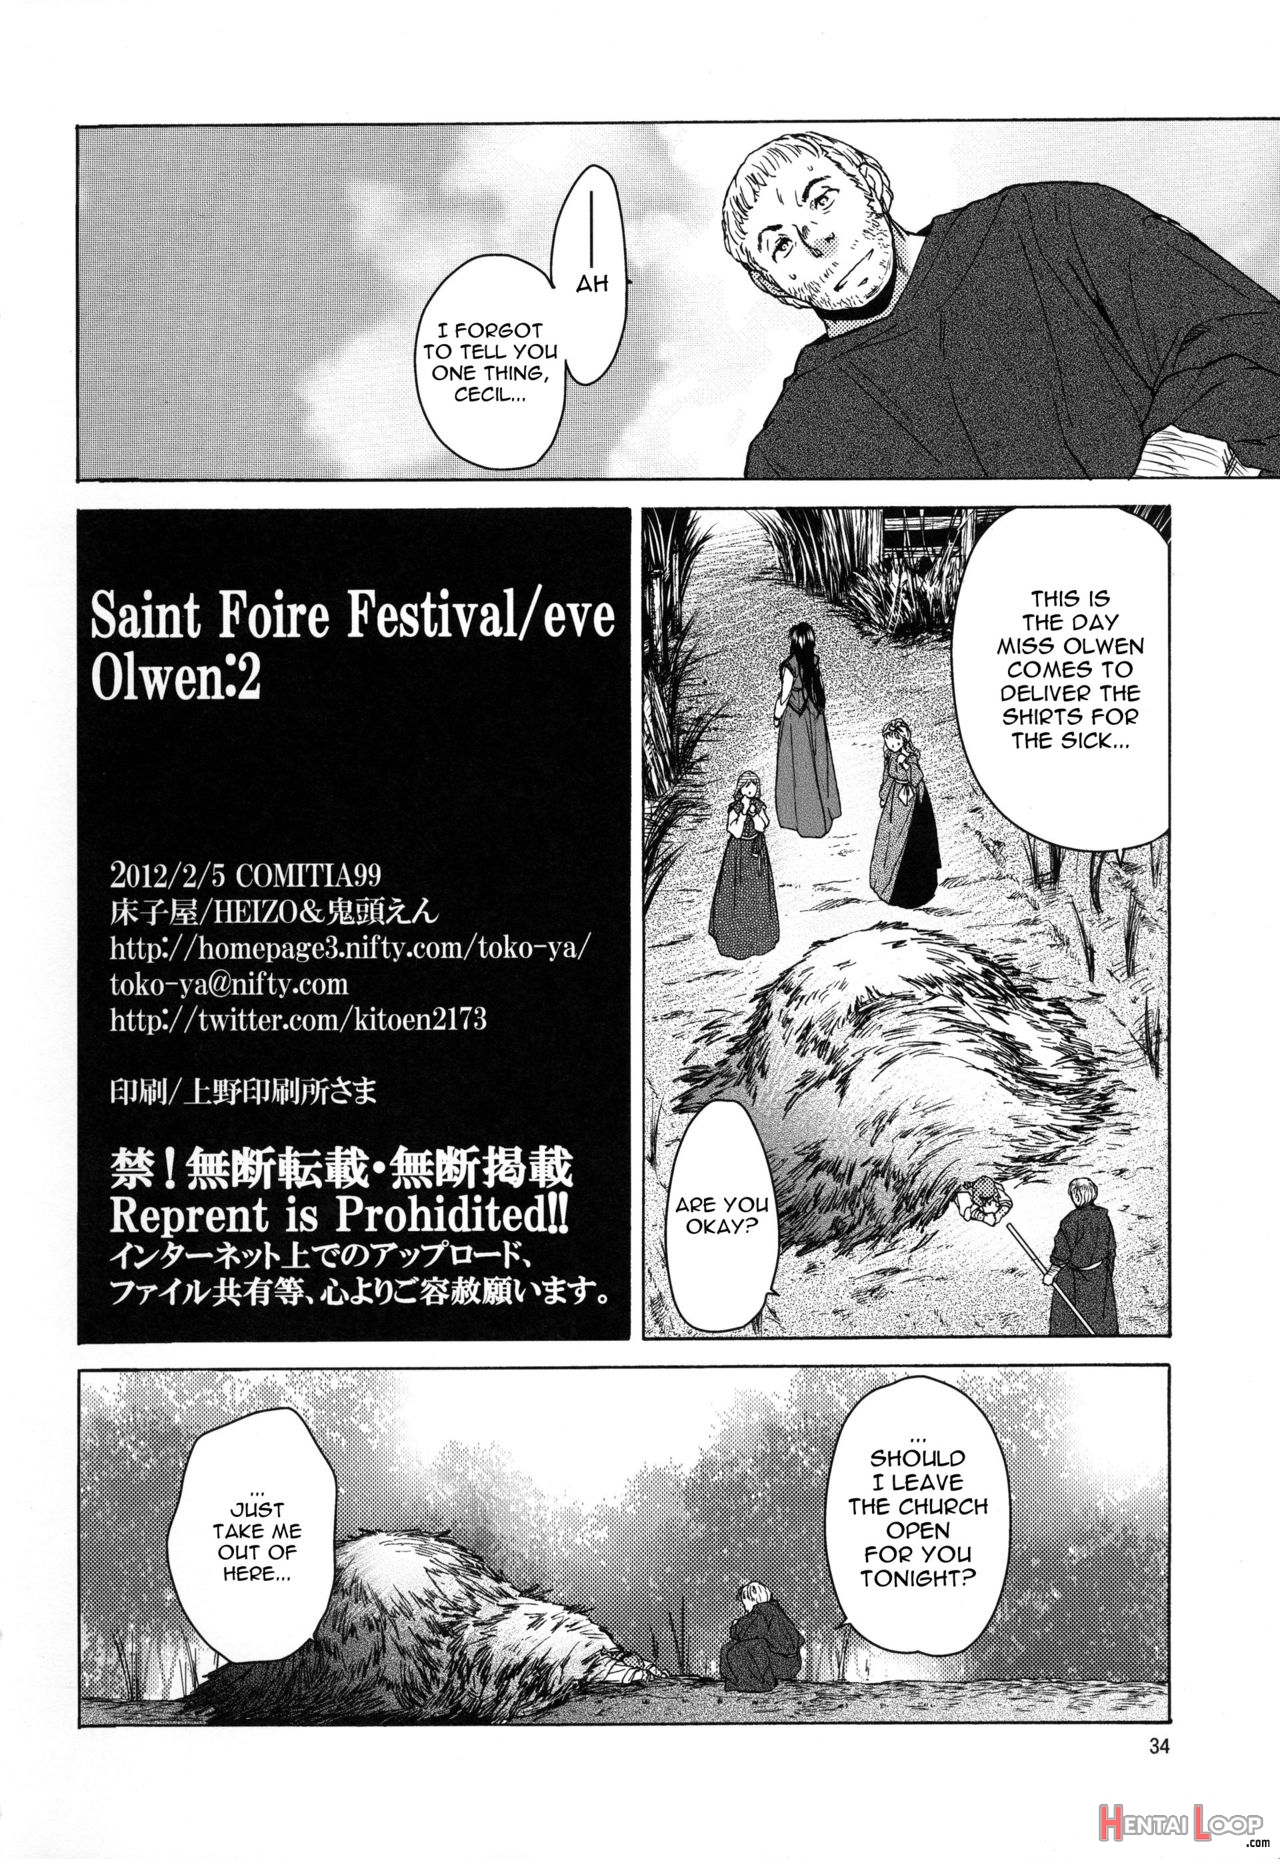 Saint Foire Festival/eve Olwen:2 page 33